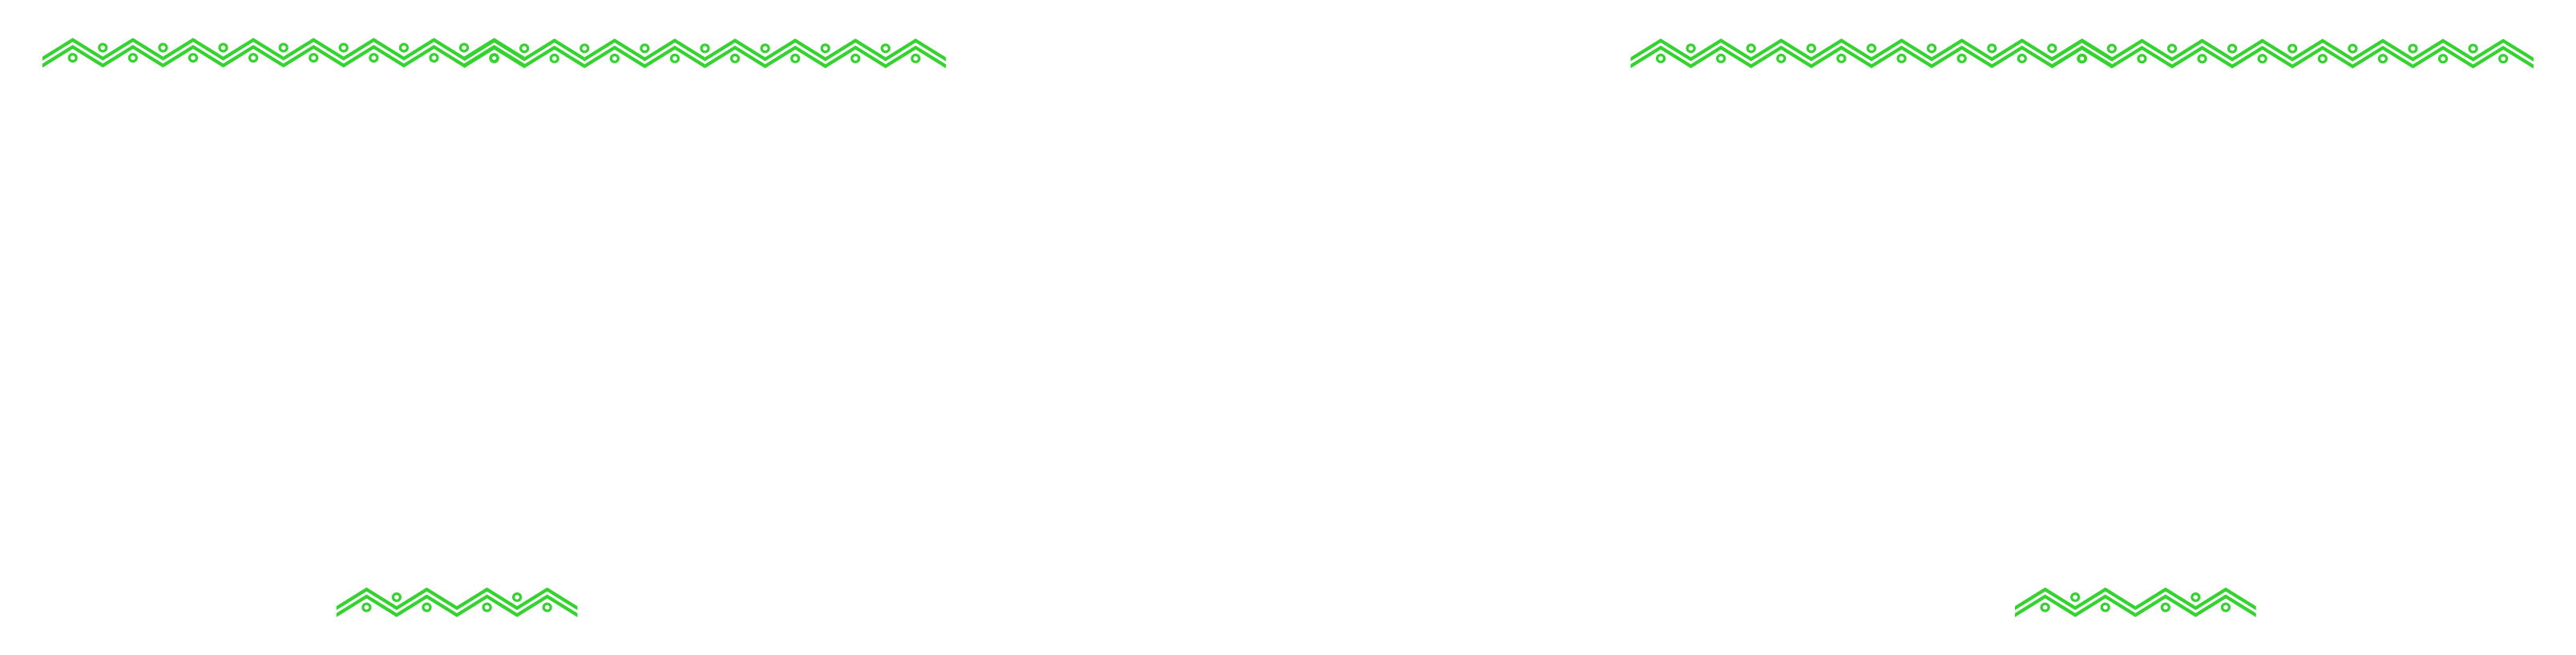 Manny's Tortas